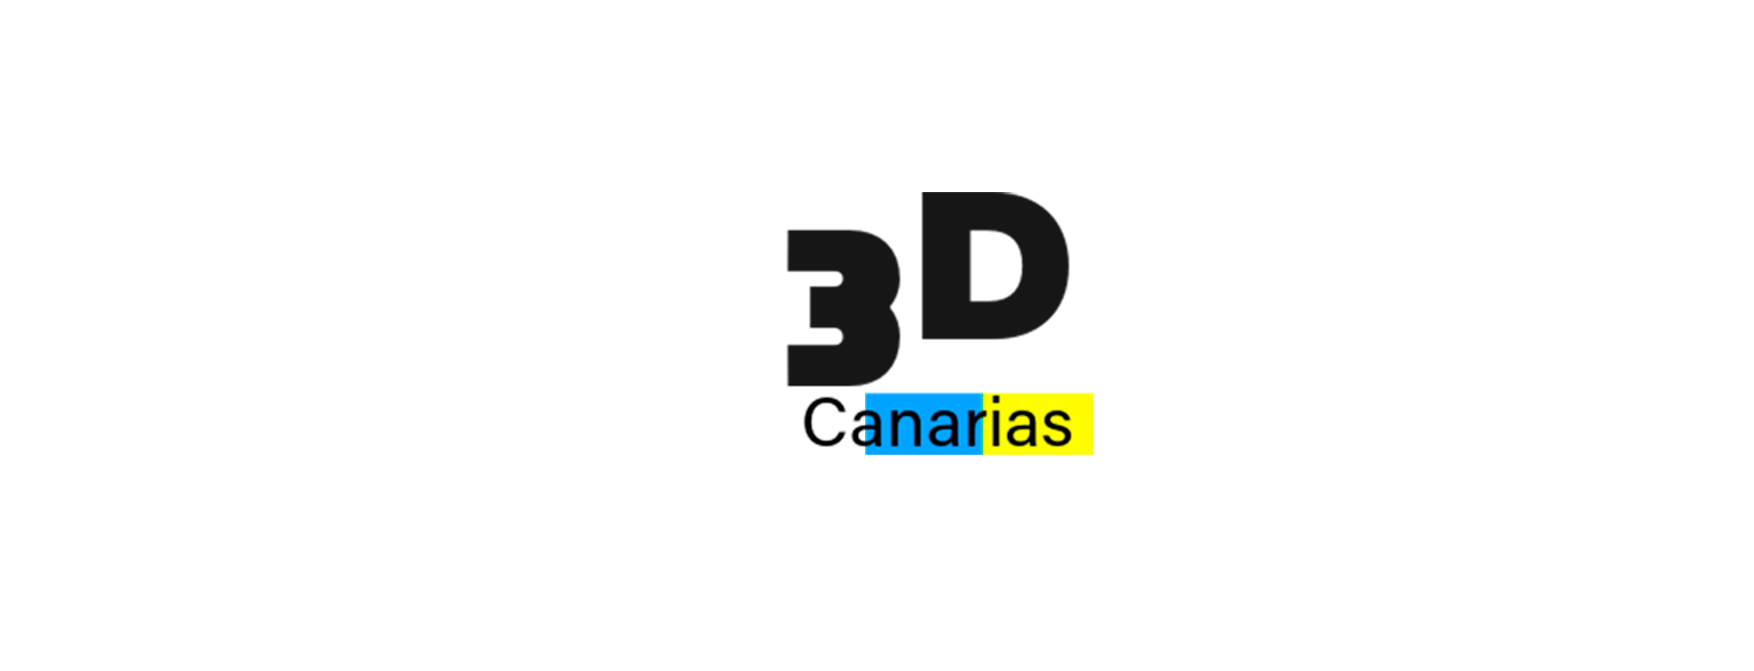 3D Canarias